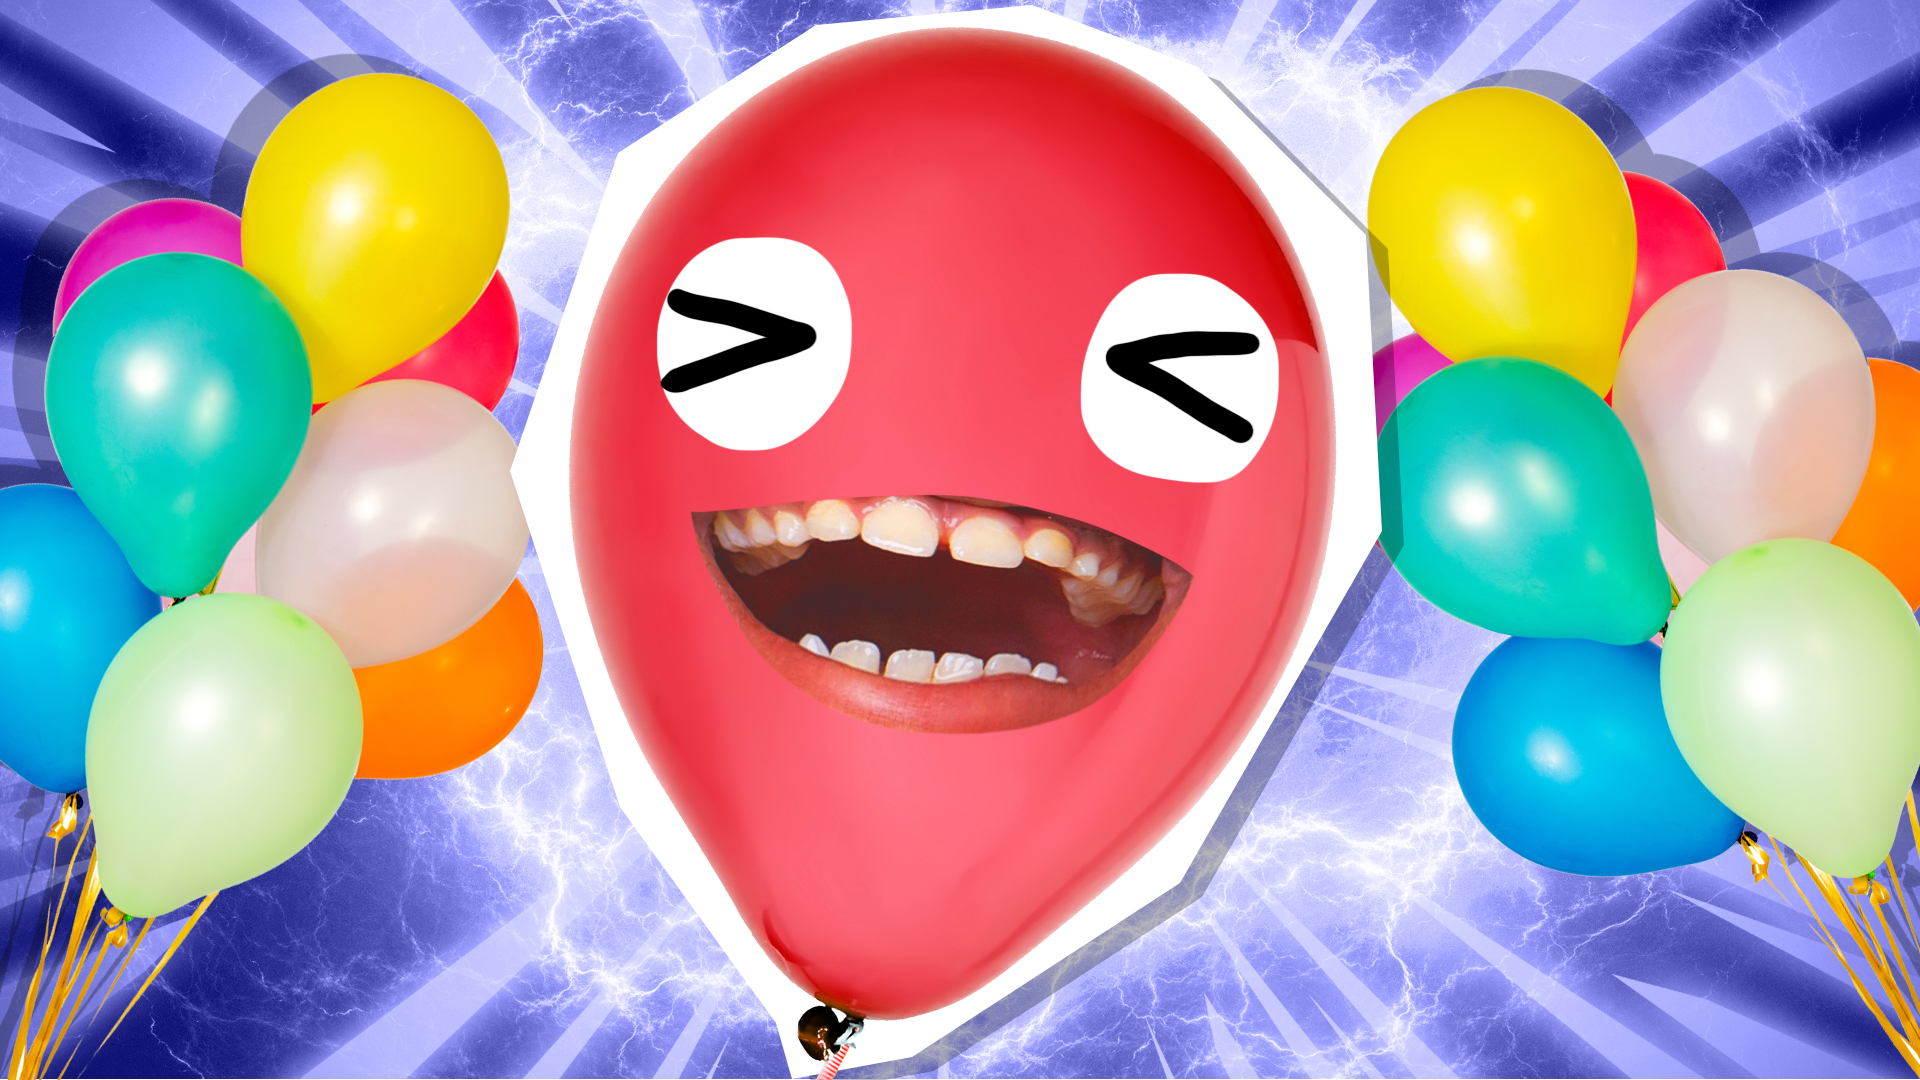 Balloon Jokes